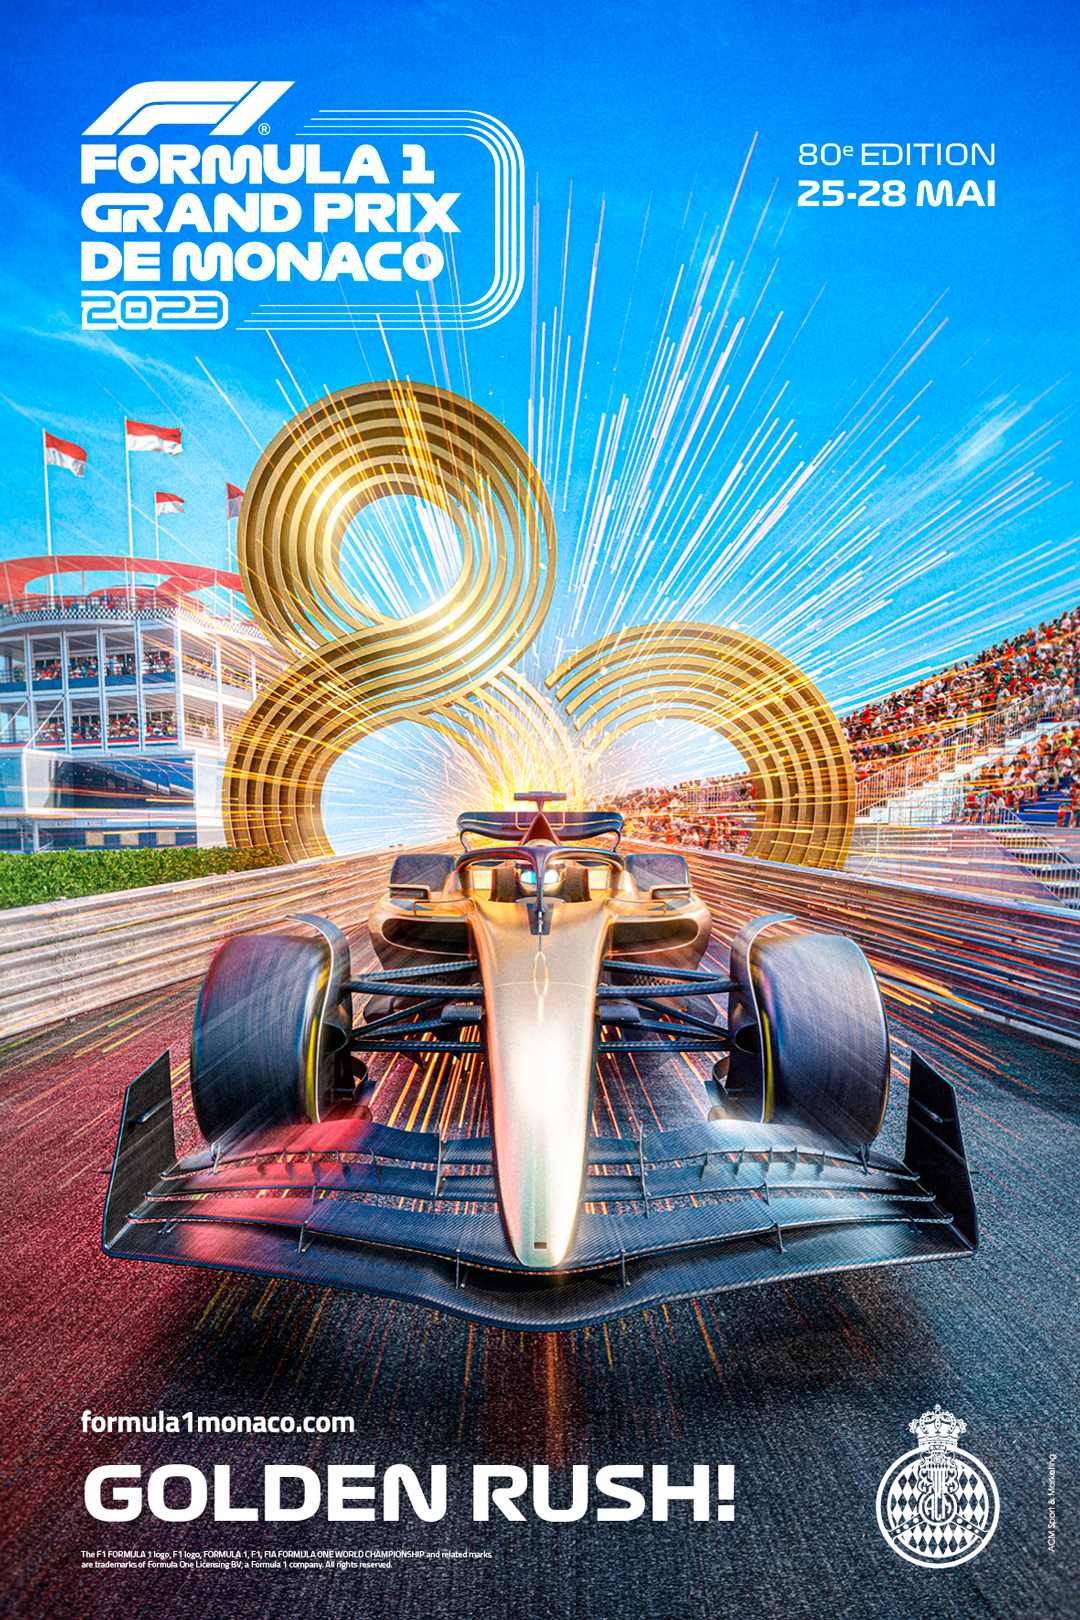 Grand Prix Monaco 2023 Dates